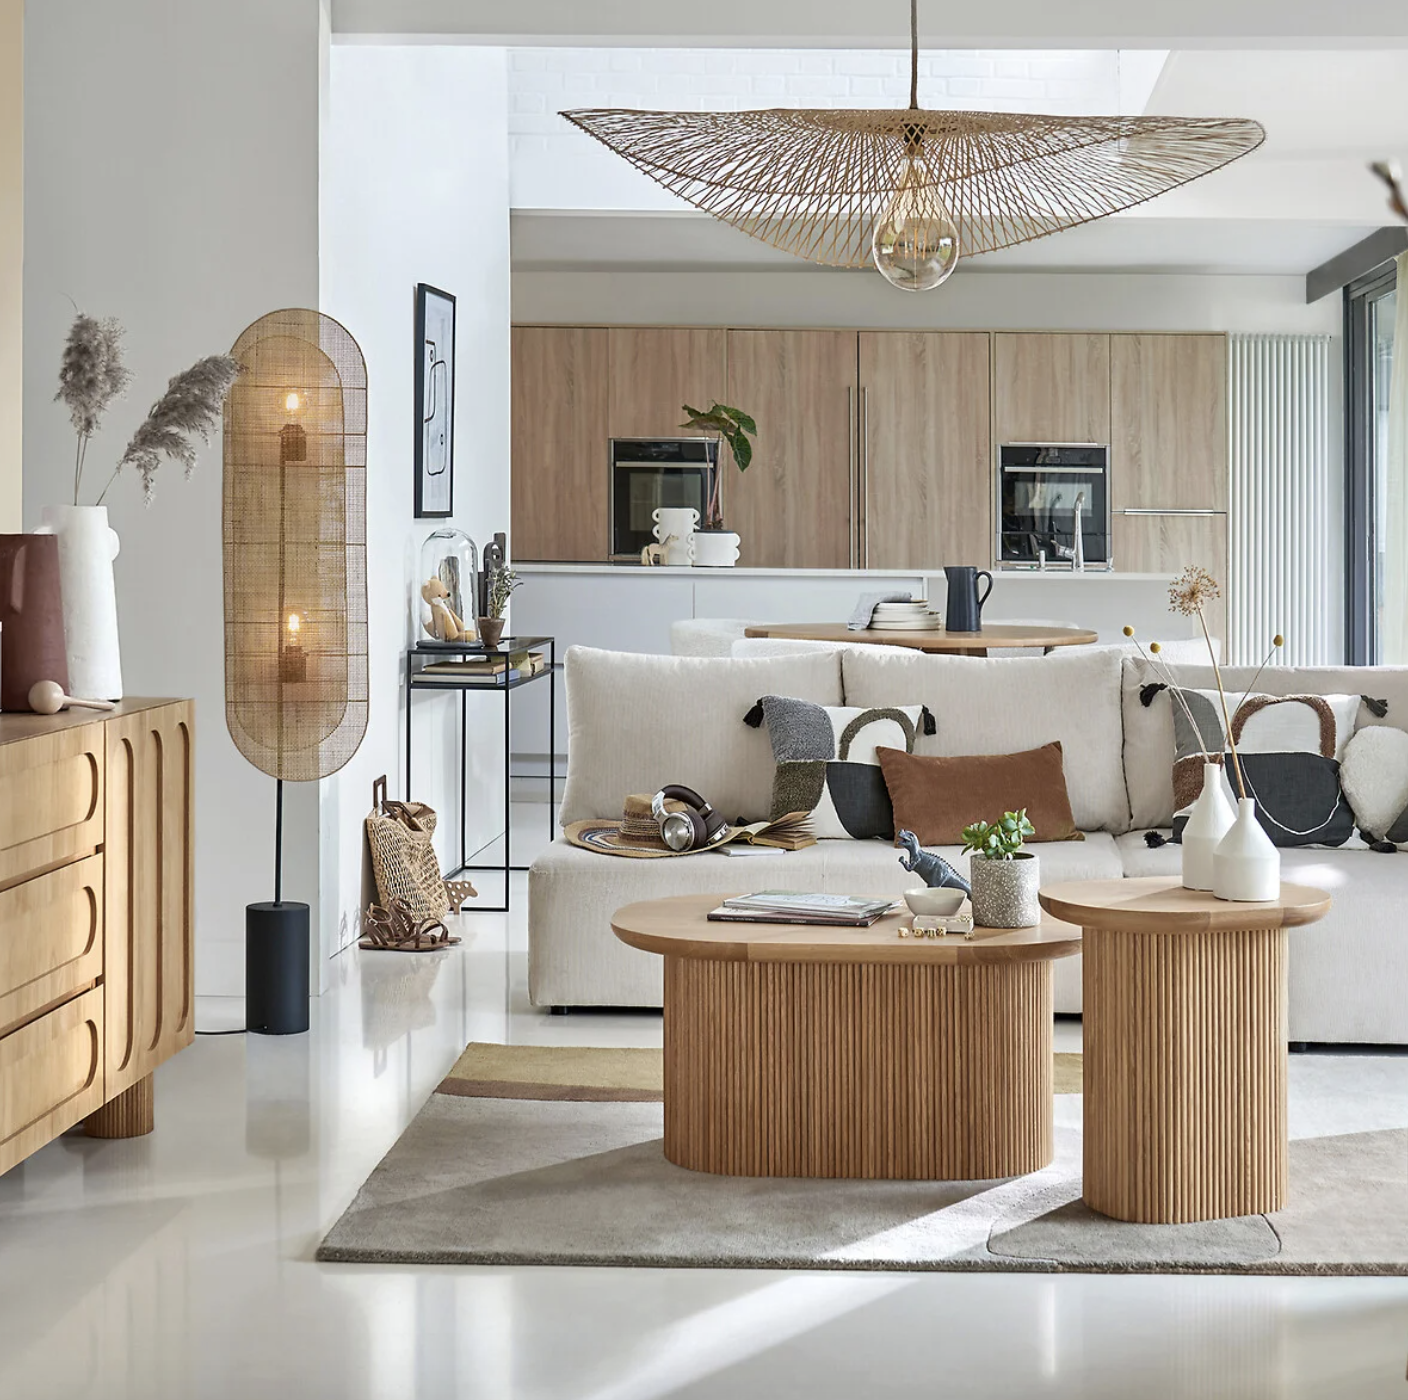 salon de estilo mediterraneo con muebles de madera, un sofa blanco y una lampara aerea